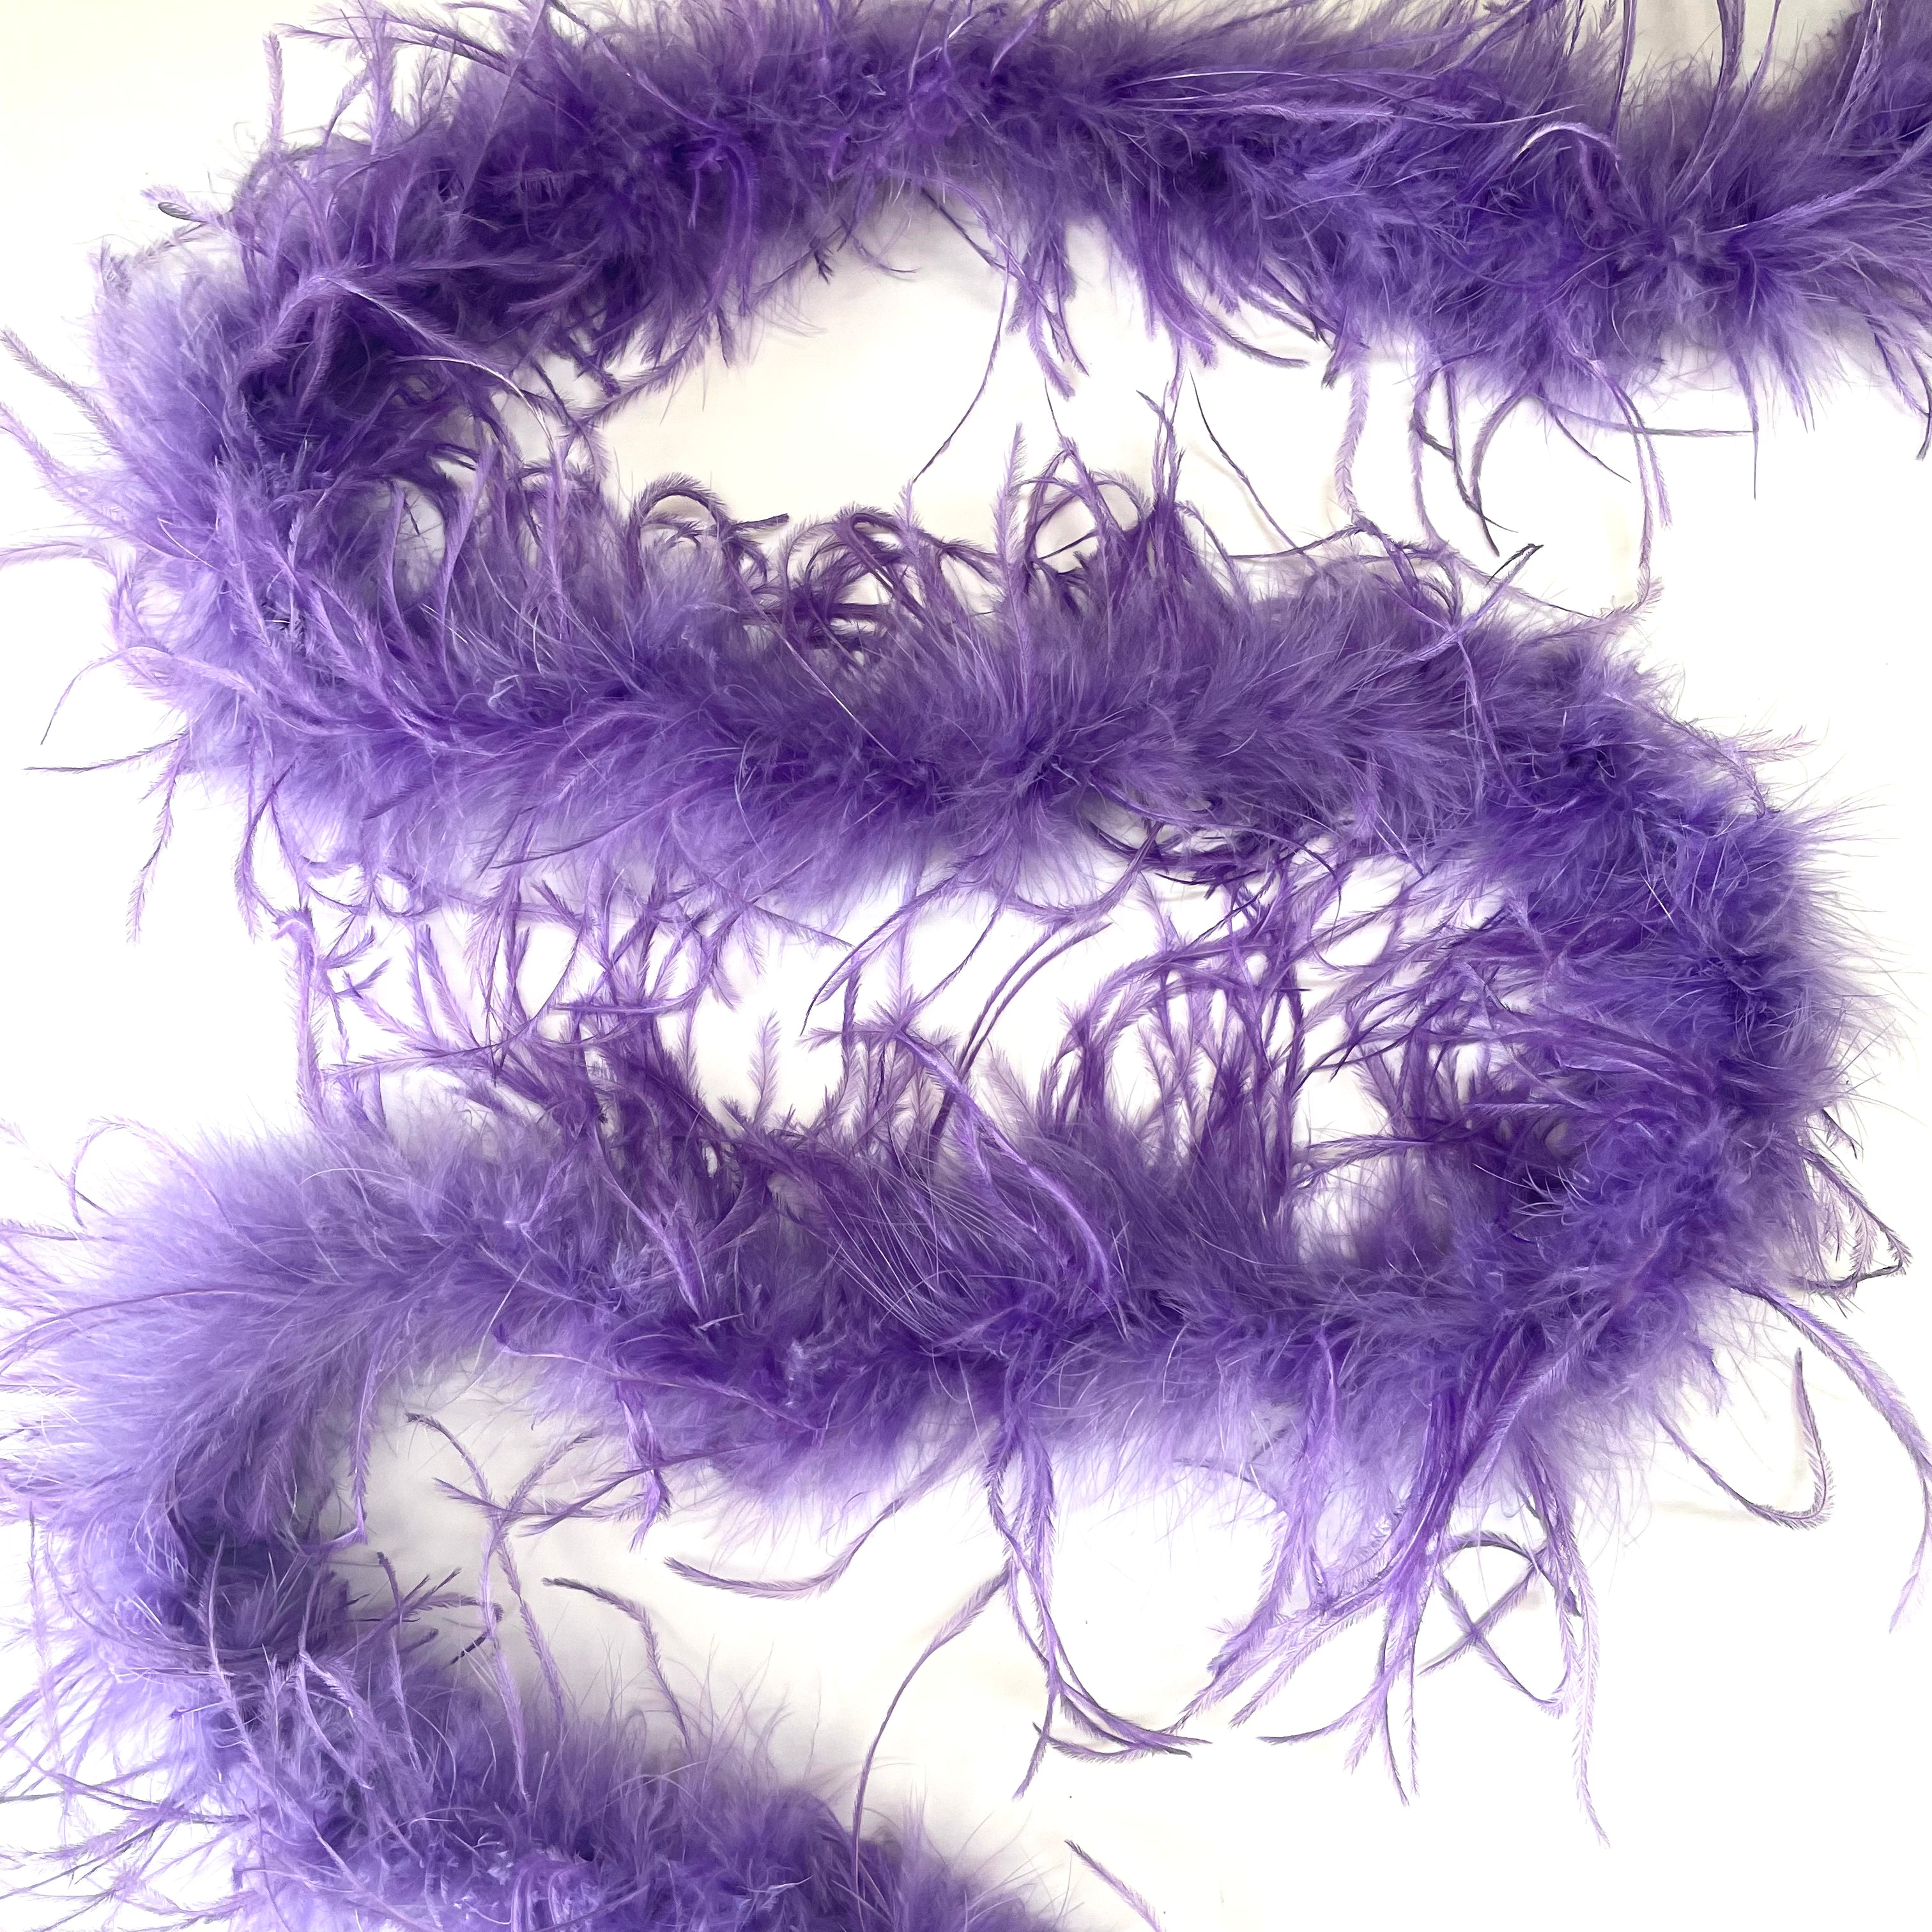 Ostrich & Marabou Feather Boa Trim per 10cm - Purple